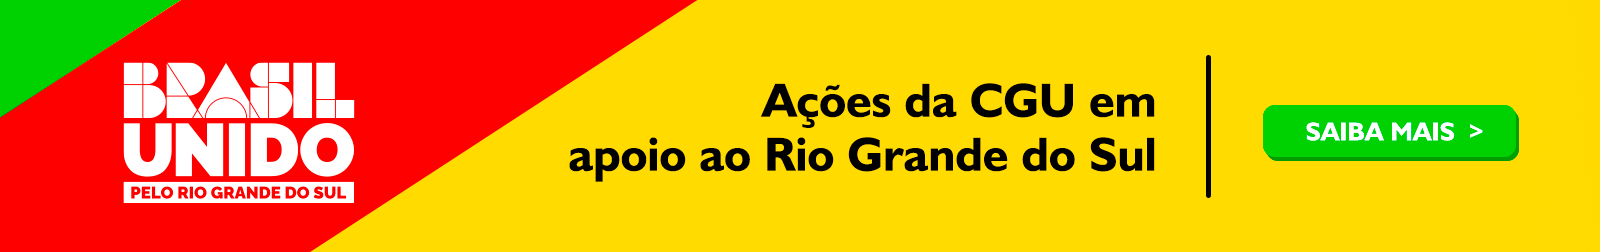 Ações da CGU em apoio ao Rio Grande do Sul